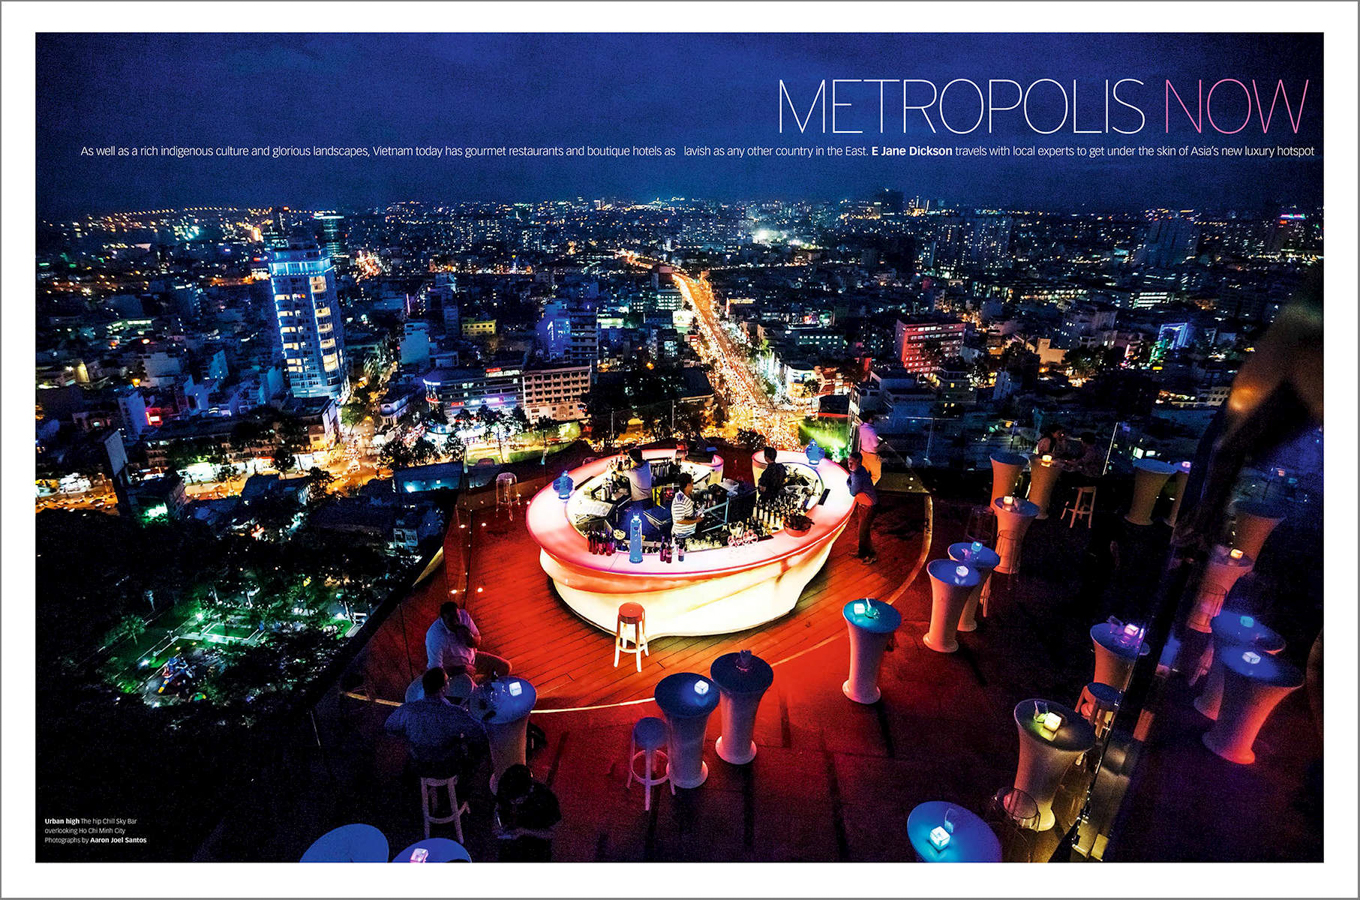 A Saigon skybar and cityscape.